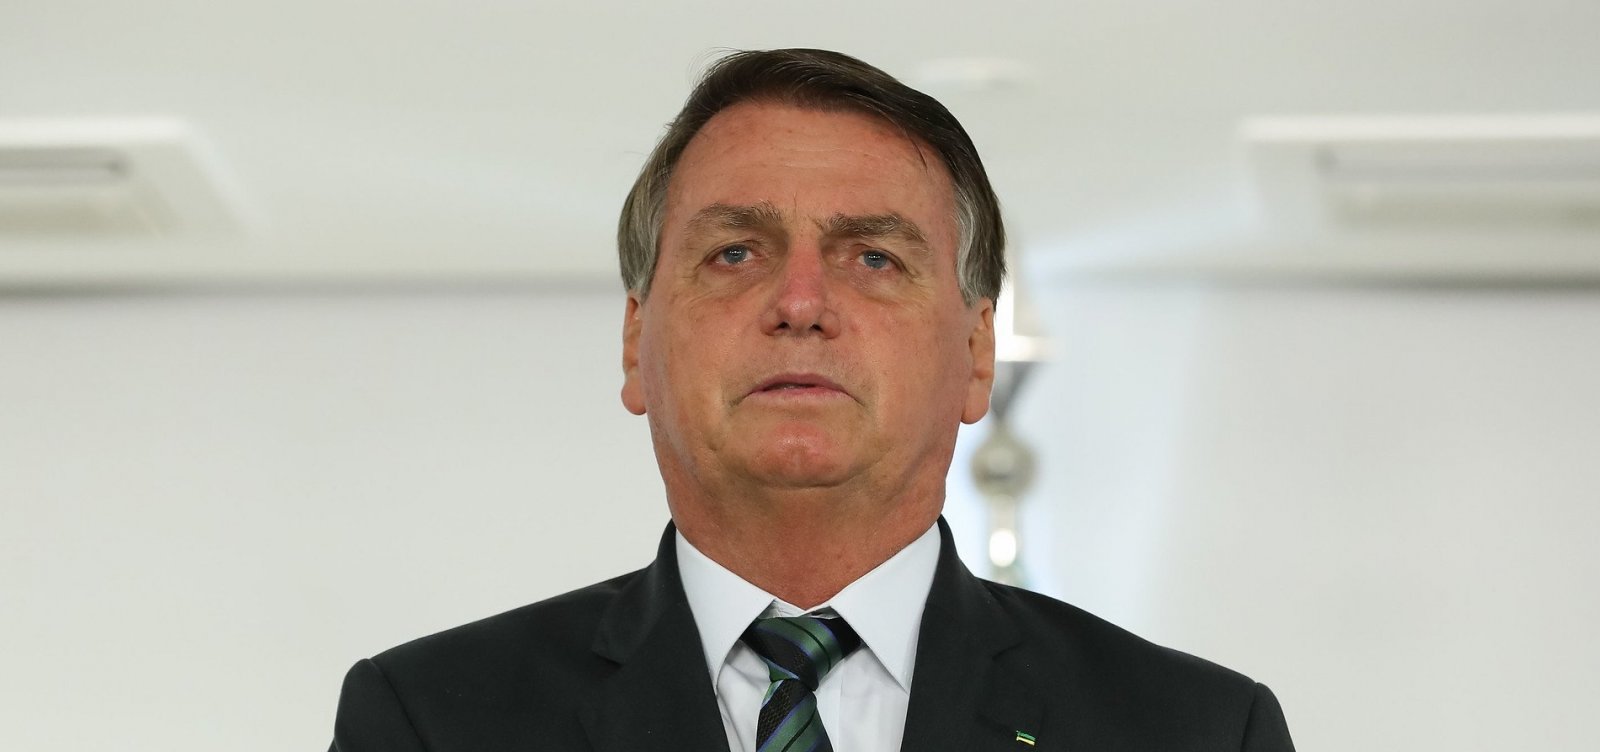 'Minha vida é um inferno', diz Bolsonaro sobre ser presidente